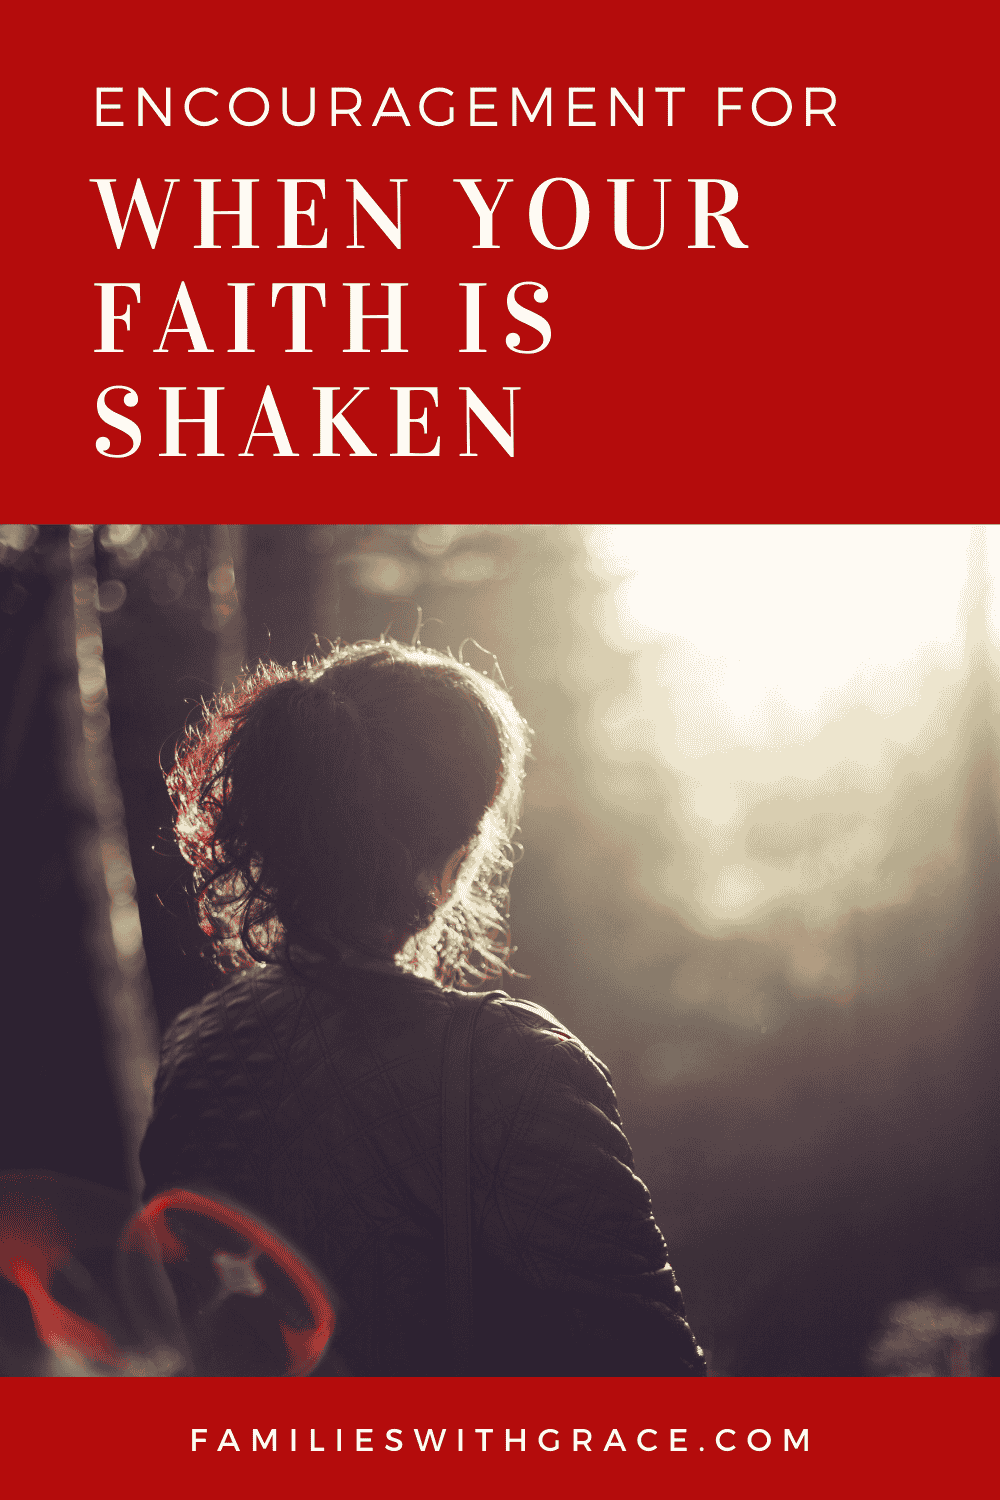 When your faith is shaken